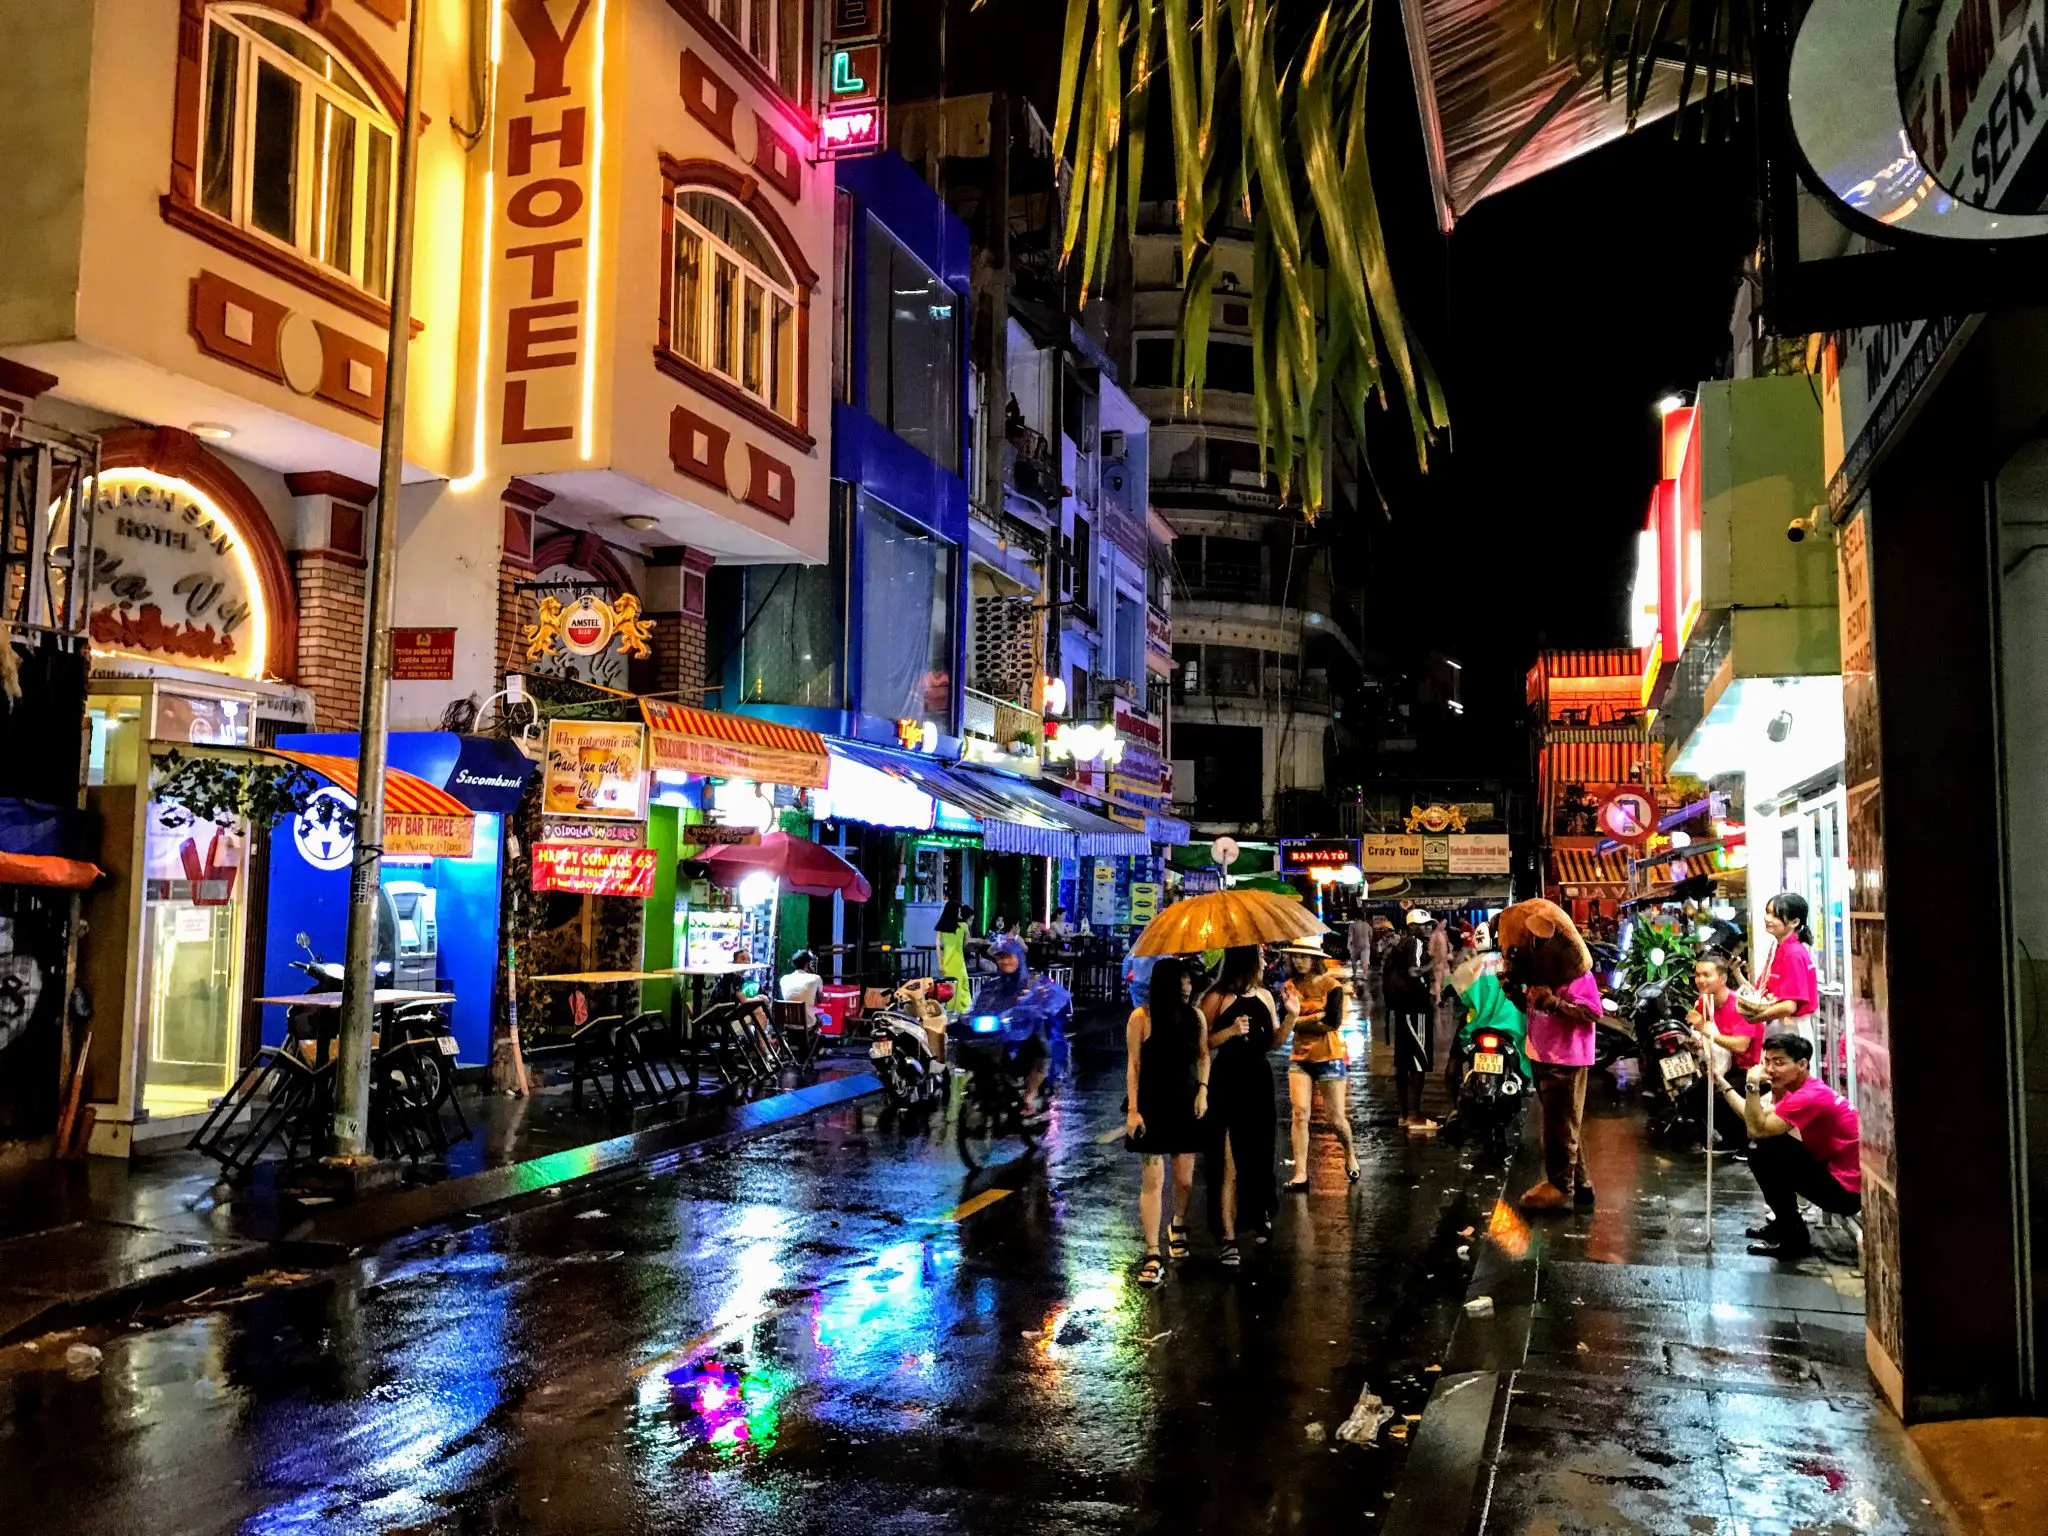 Bui Vien Street, Ho Chi Minh City, Vietnam